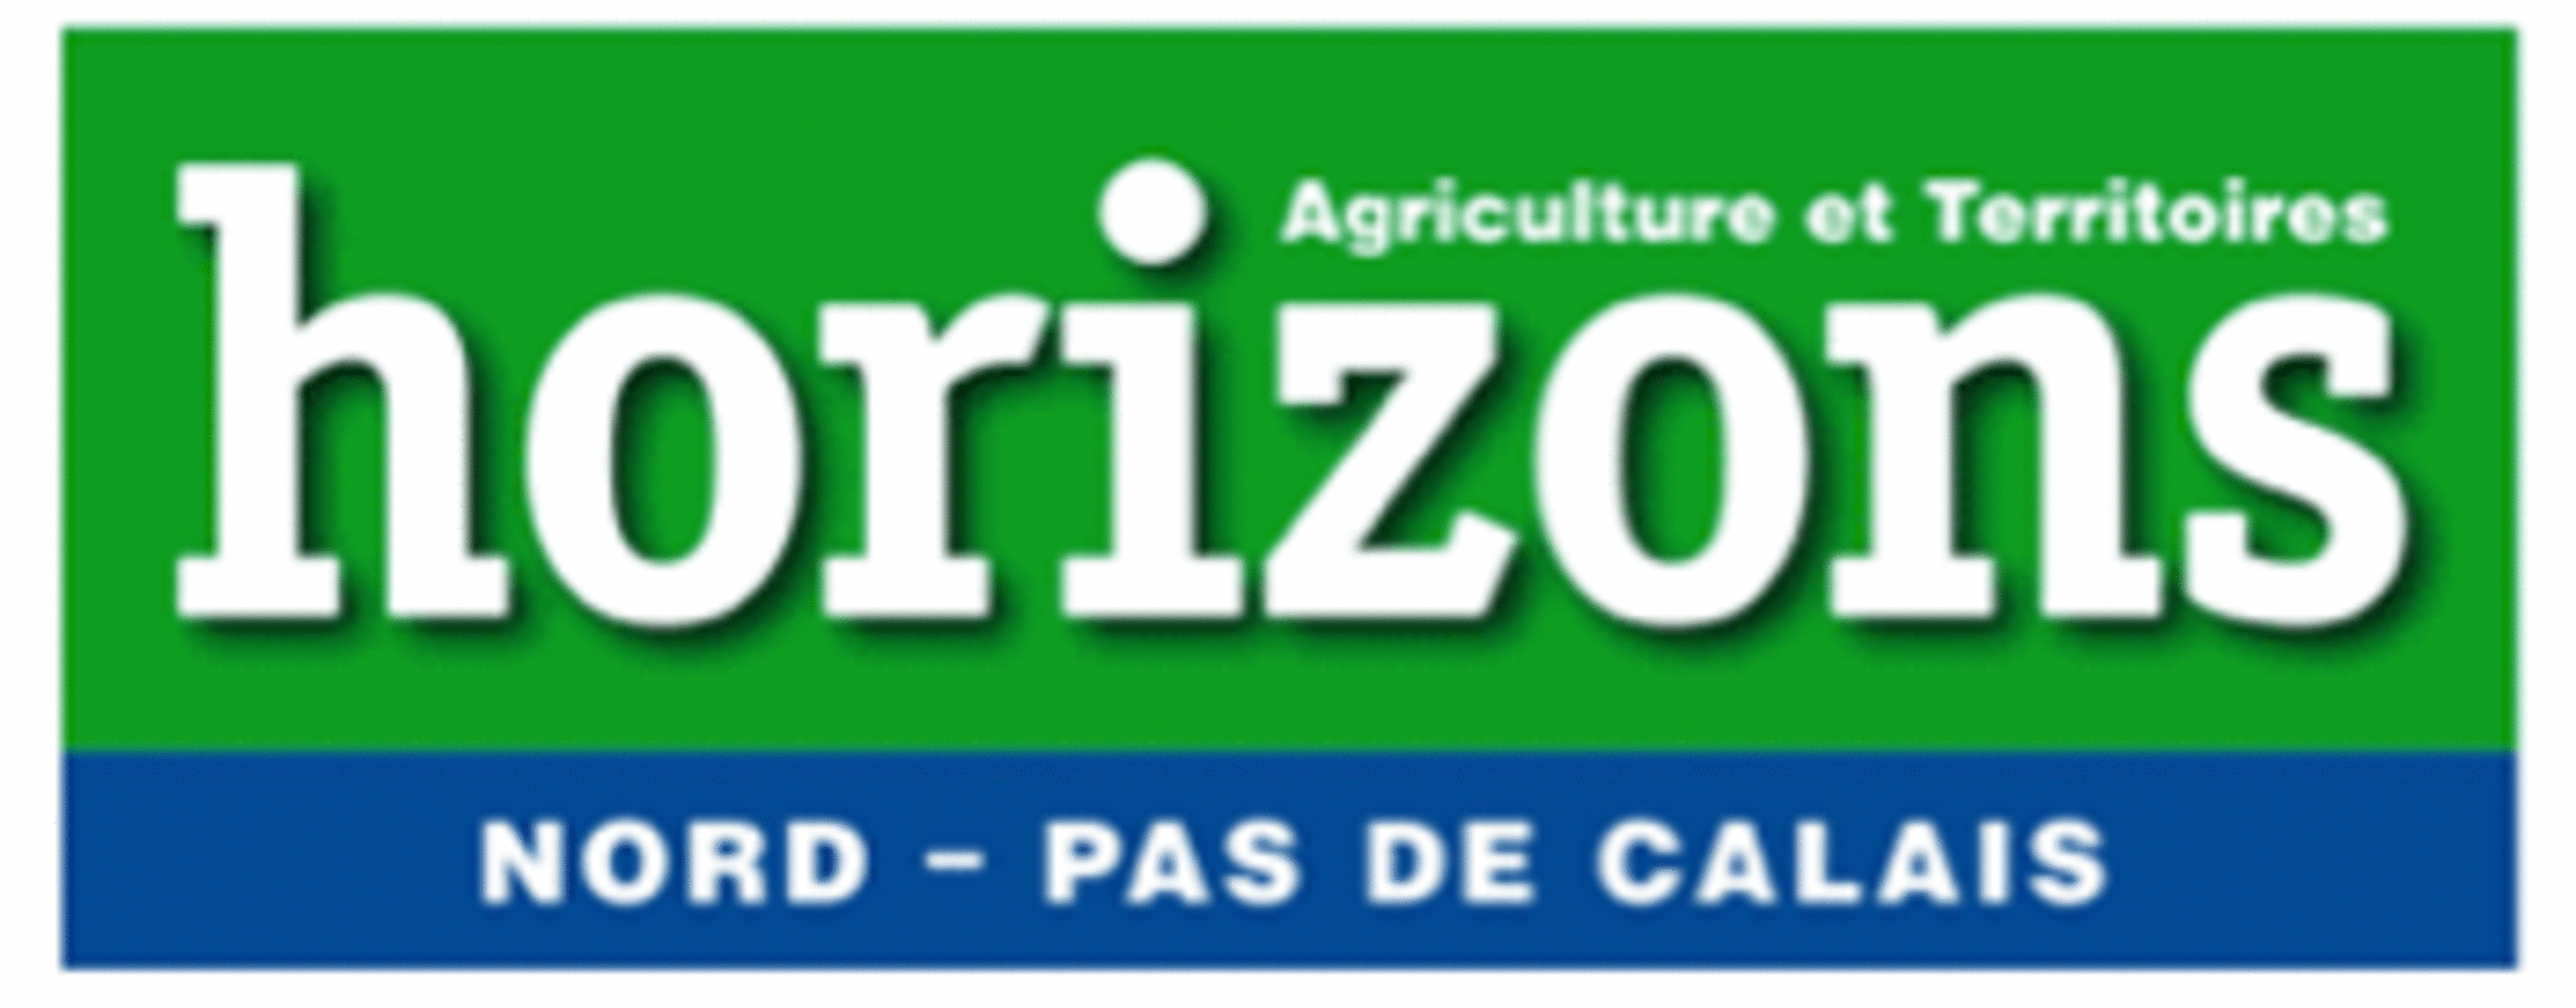 HORIZONS AGRICULTURE ET TERRITOIRES NORD PAS DE CALAIS - Avril 2014